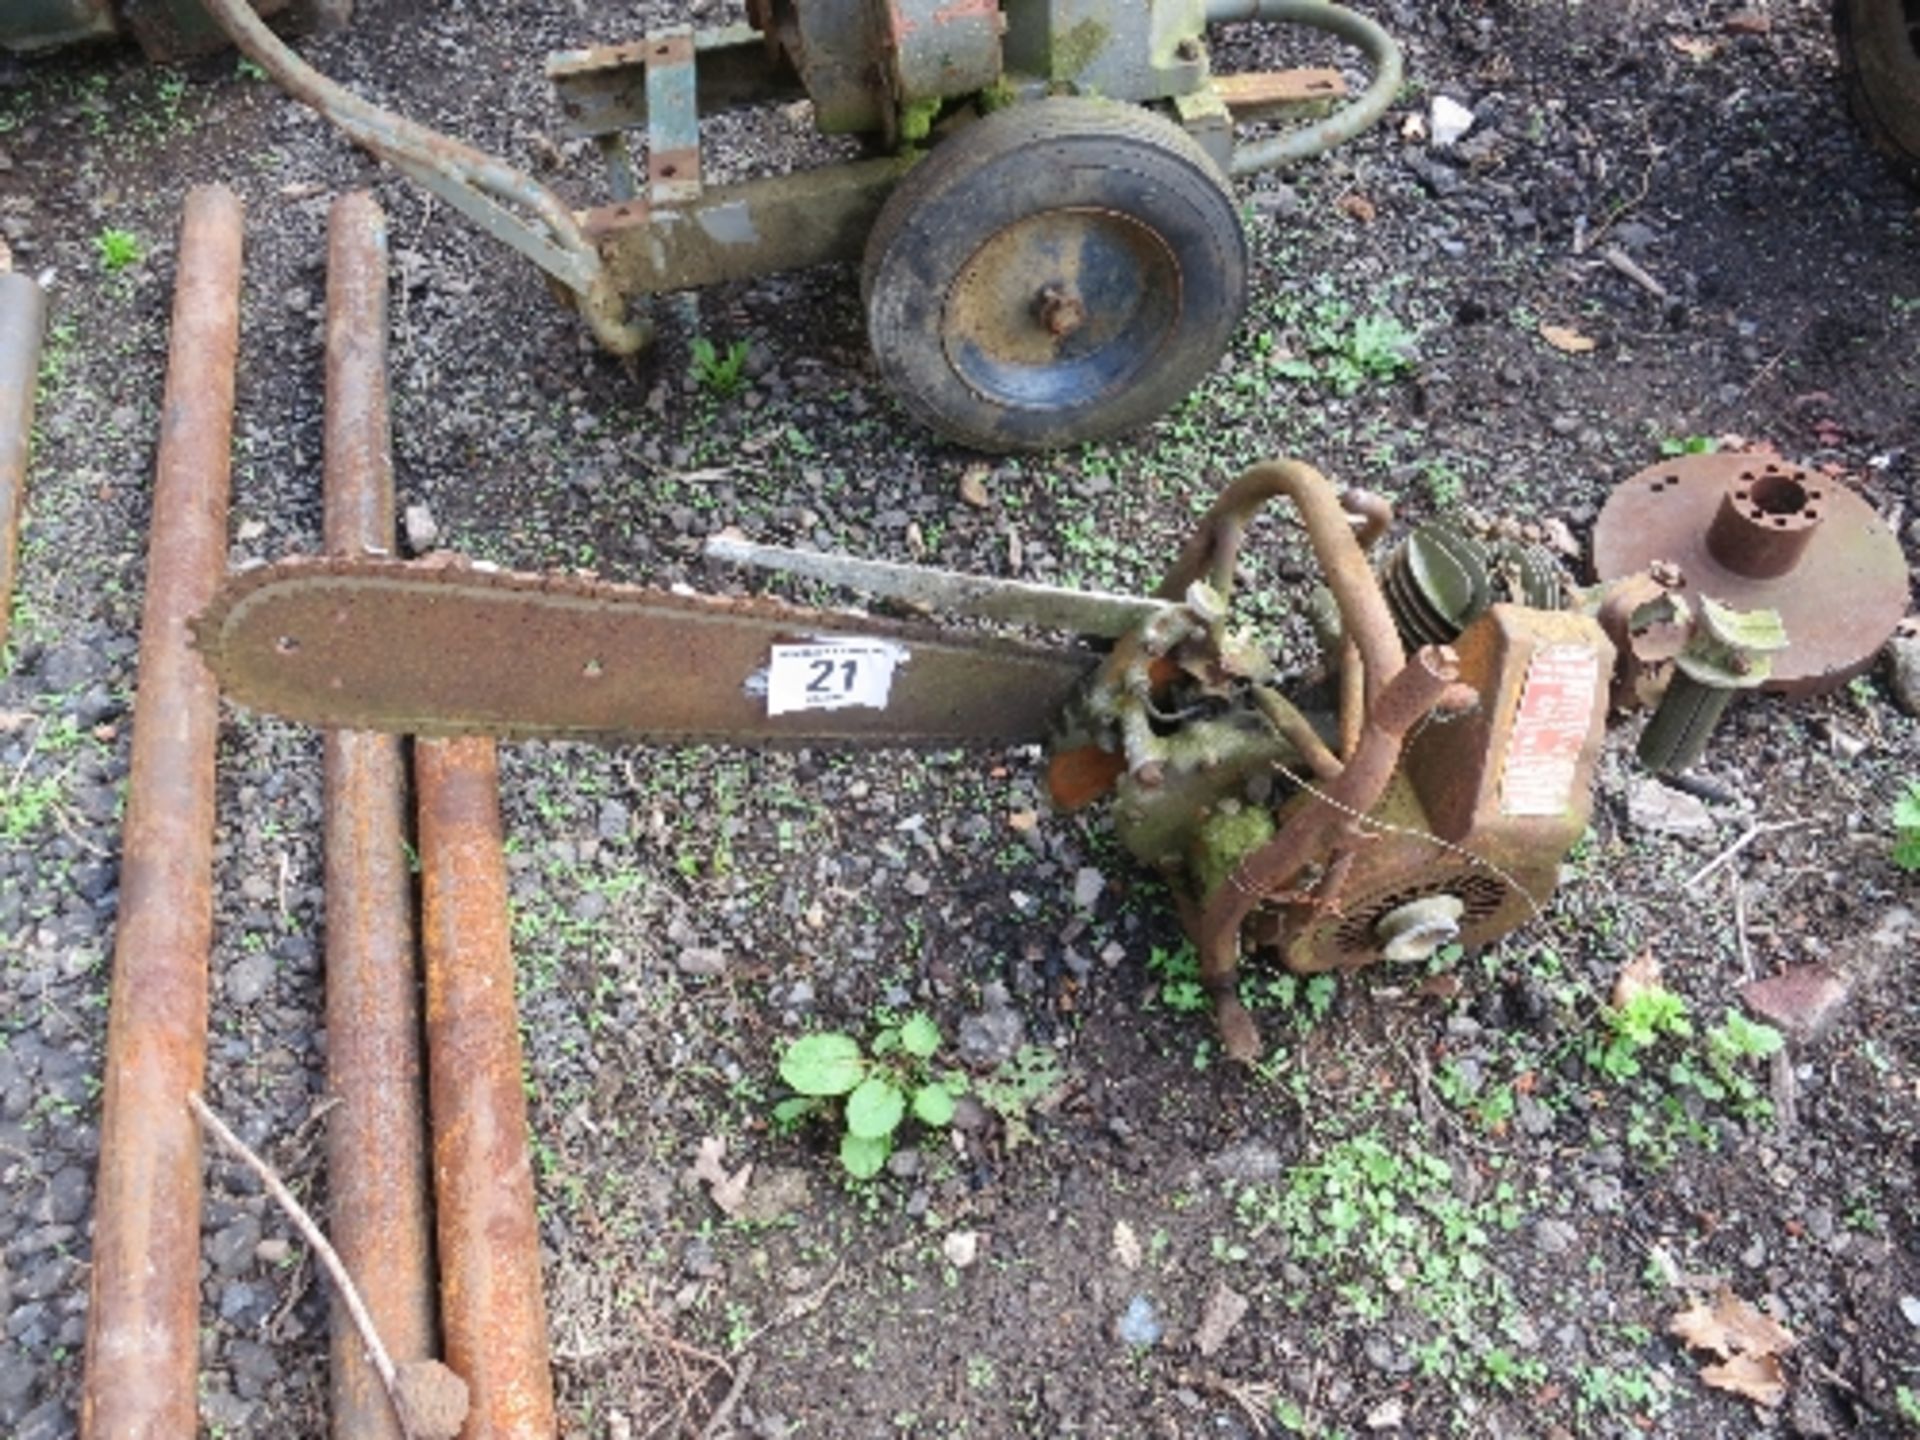 Vintage Danarm chain saw